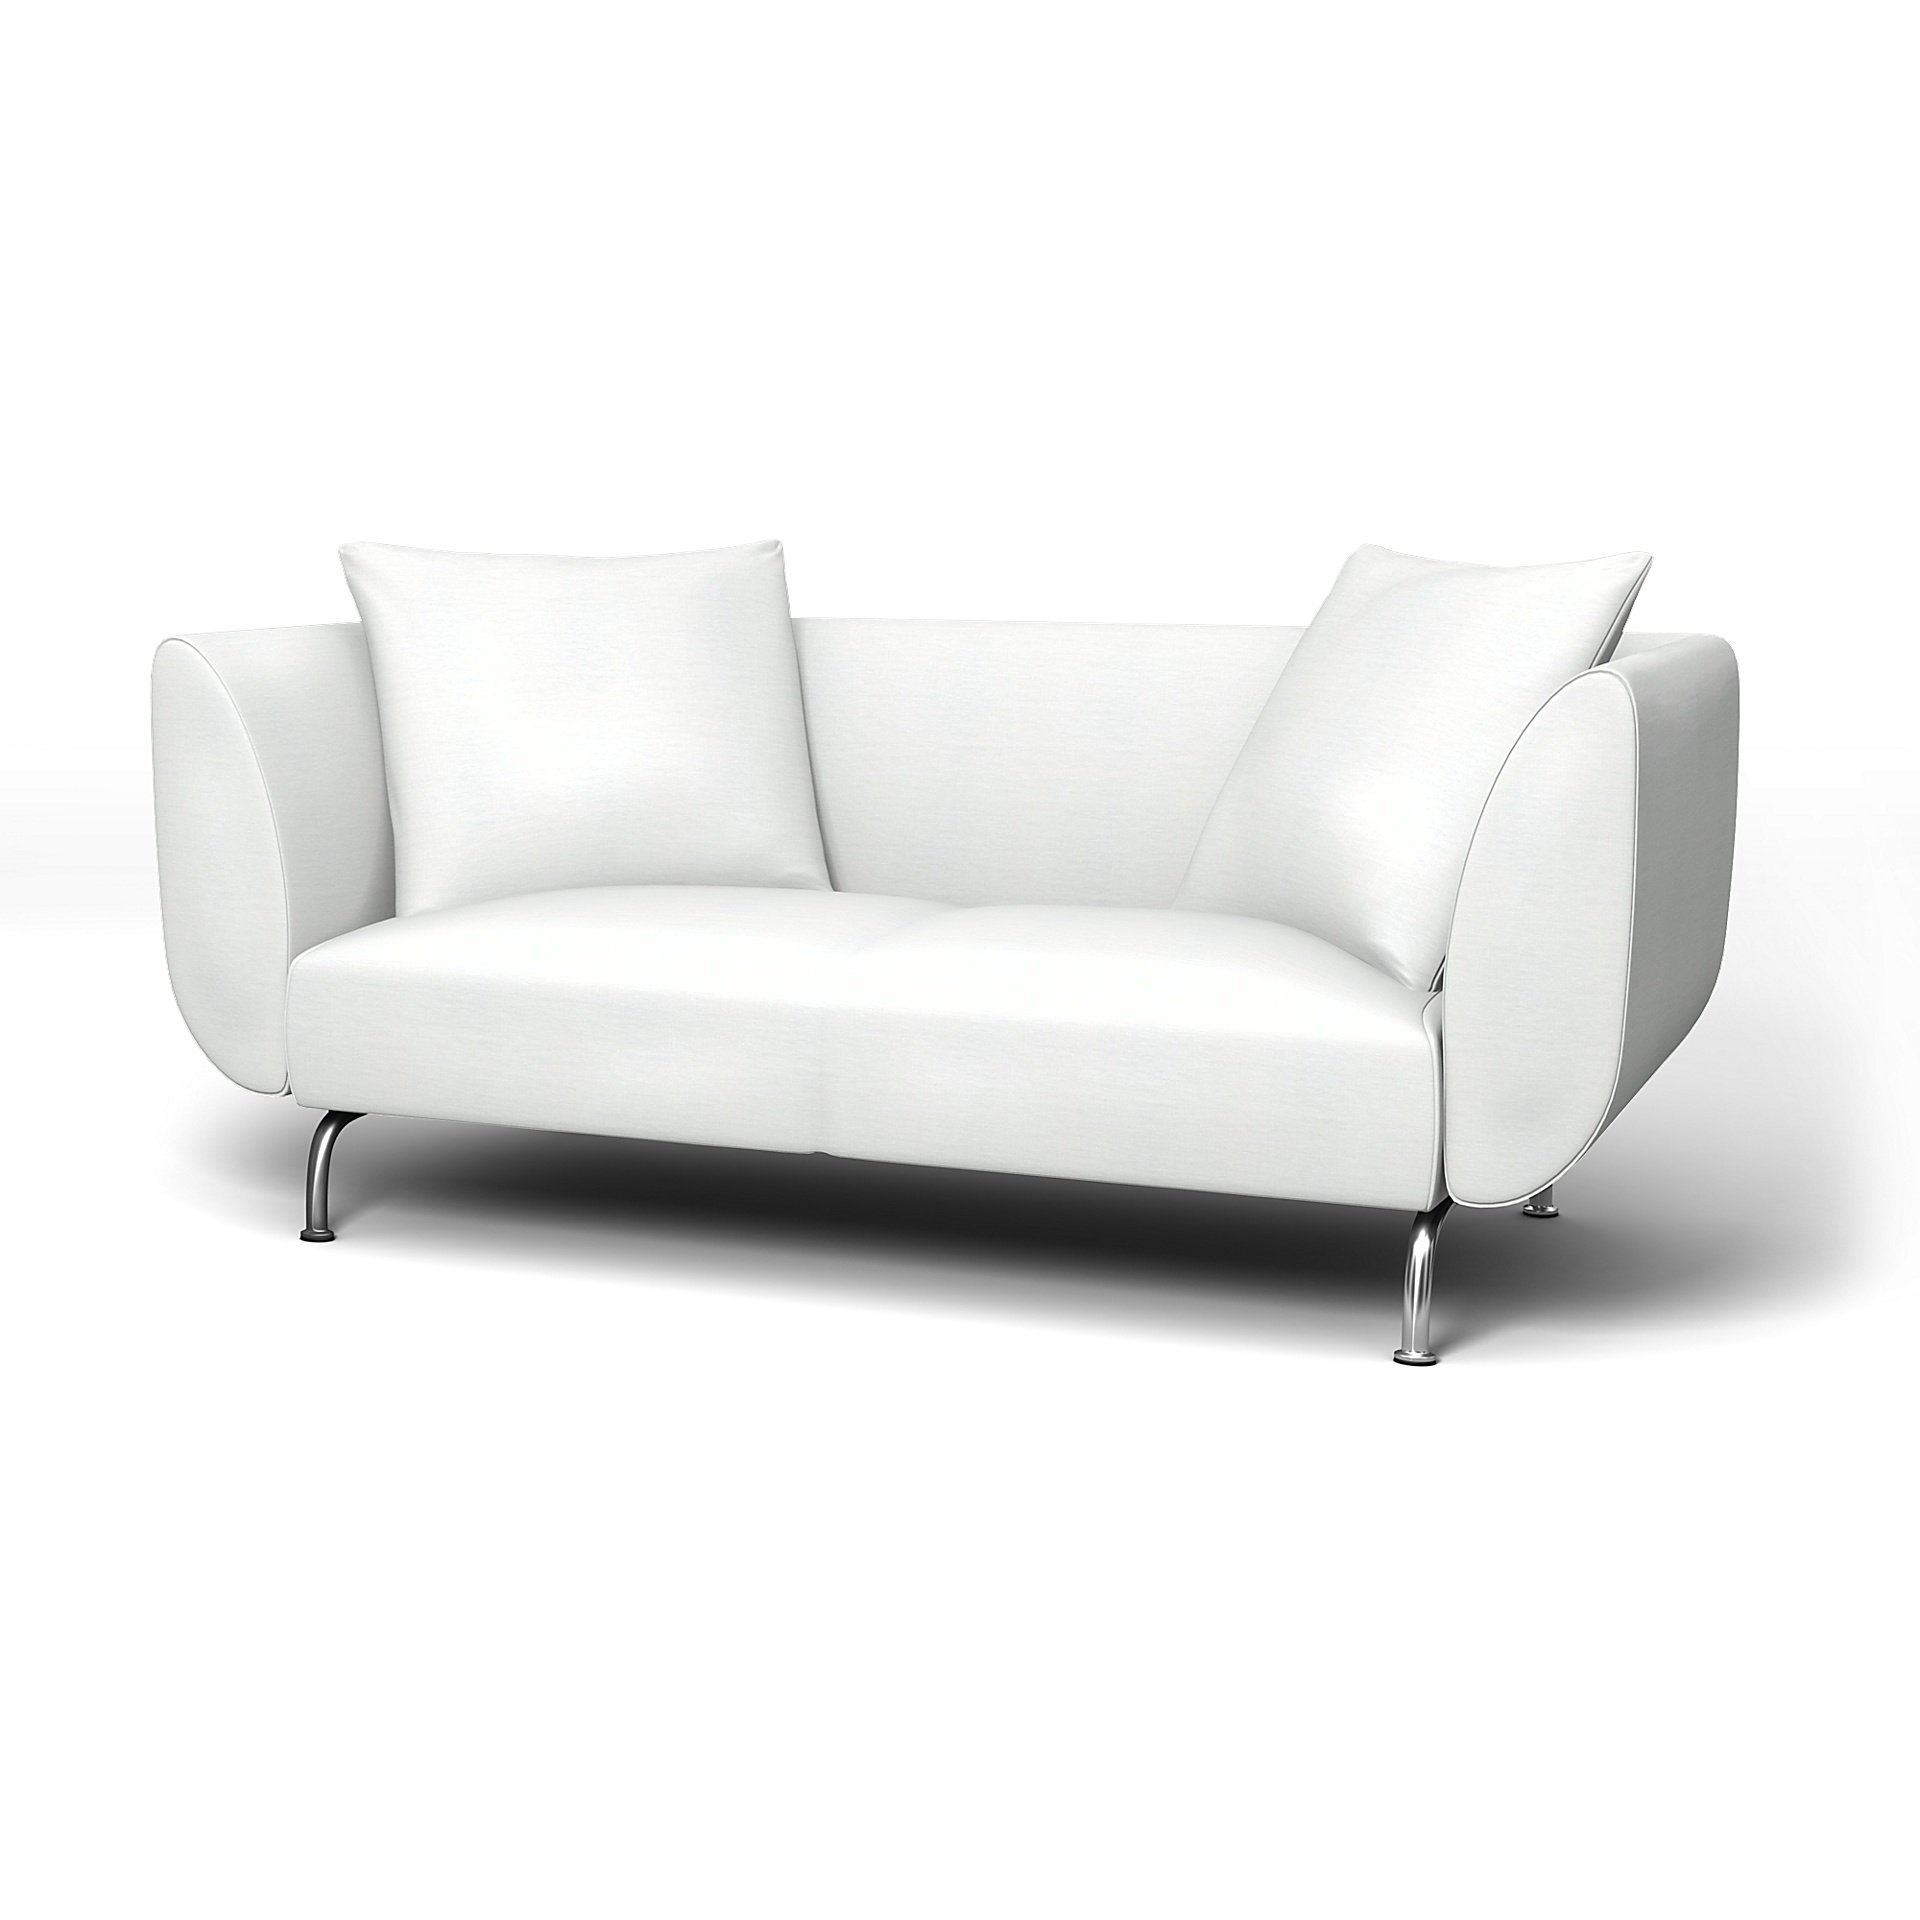 IKEA - Stromstad 2 Seater Sofa Cover, White, Linen - Bemz